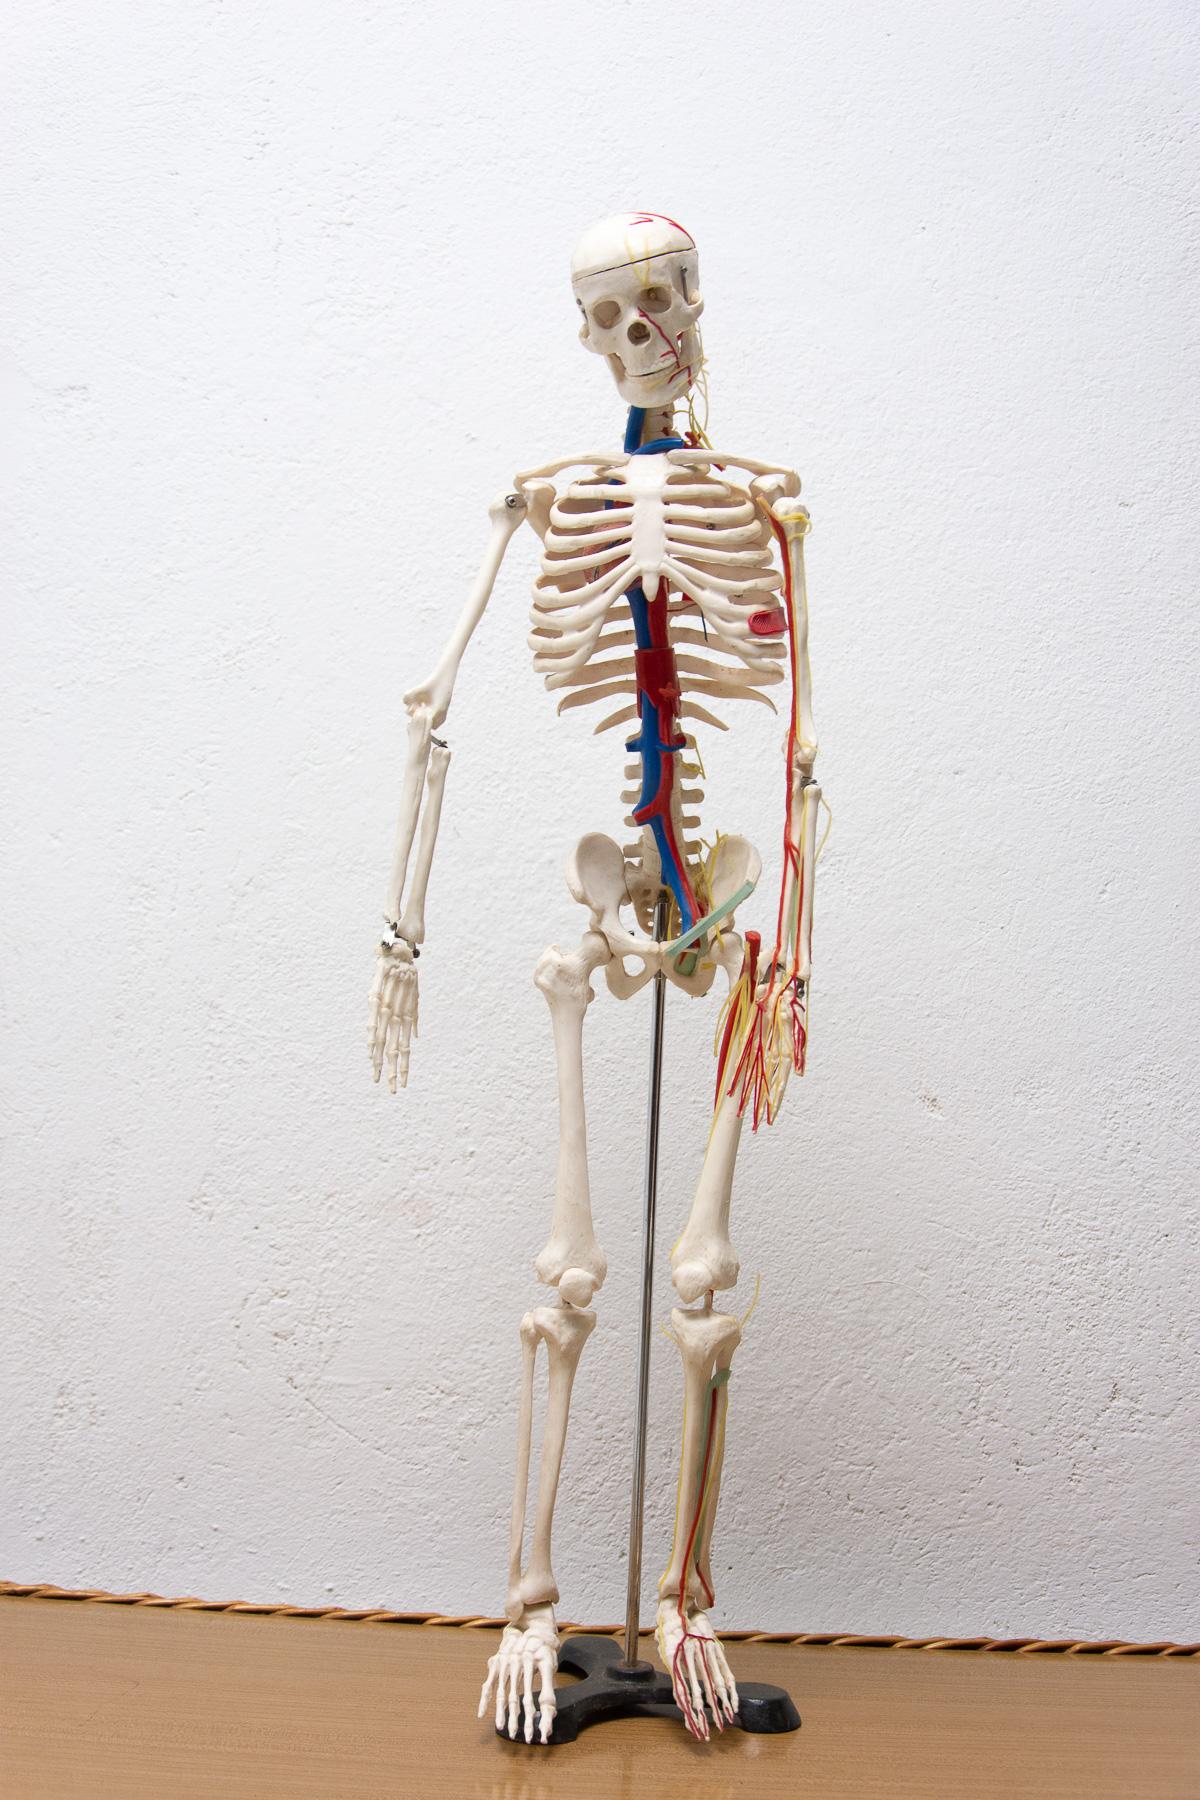 Diese Schulhilfe eines menschlichen Skeletts wurde in den 1960er Jahren in der Tschechoslowakei aus Kunststoff hergestellt. Es ist in sehr gutem Zustand, zeigt leichte Alters- und Gebrauchsspuren

Maße: Höhe: 86 cm

Breite: 21 cm

Tiefe: 23 cm.